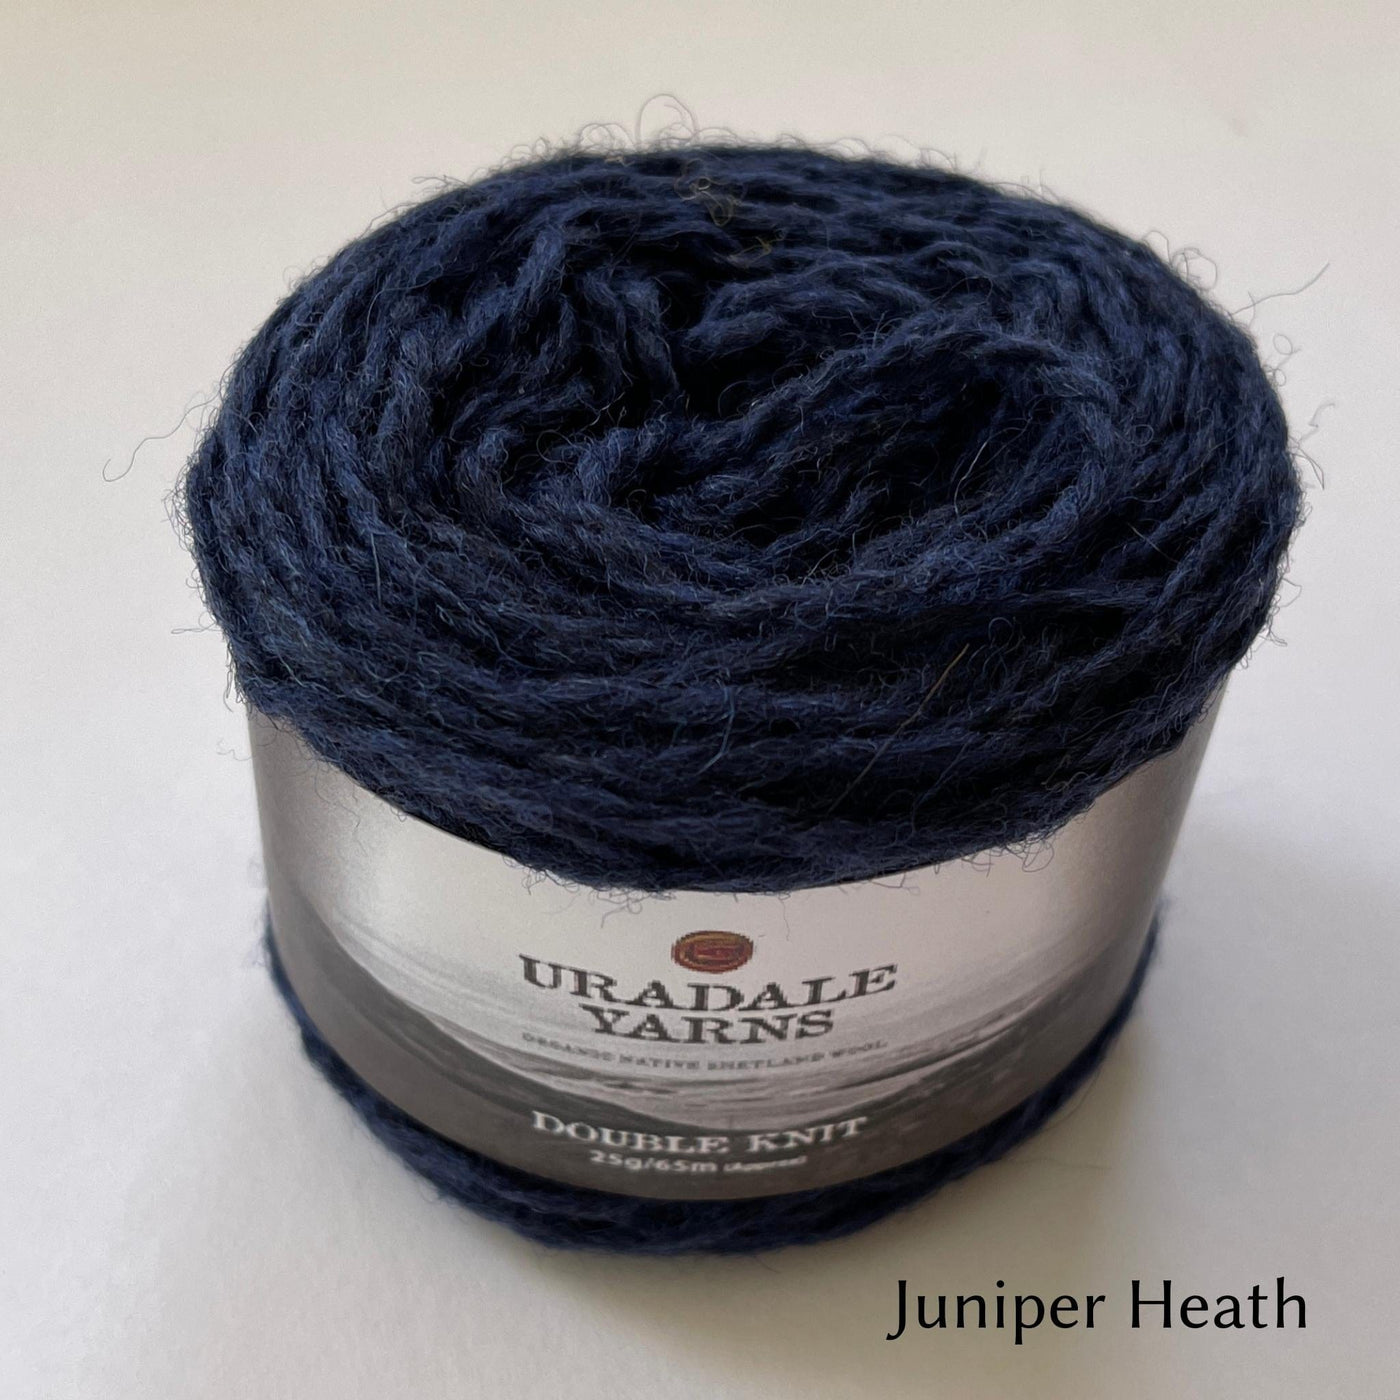 cake of Uradale DK yarn in color Juniper Heath- heathered blue